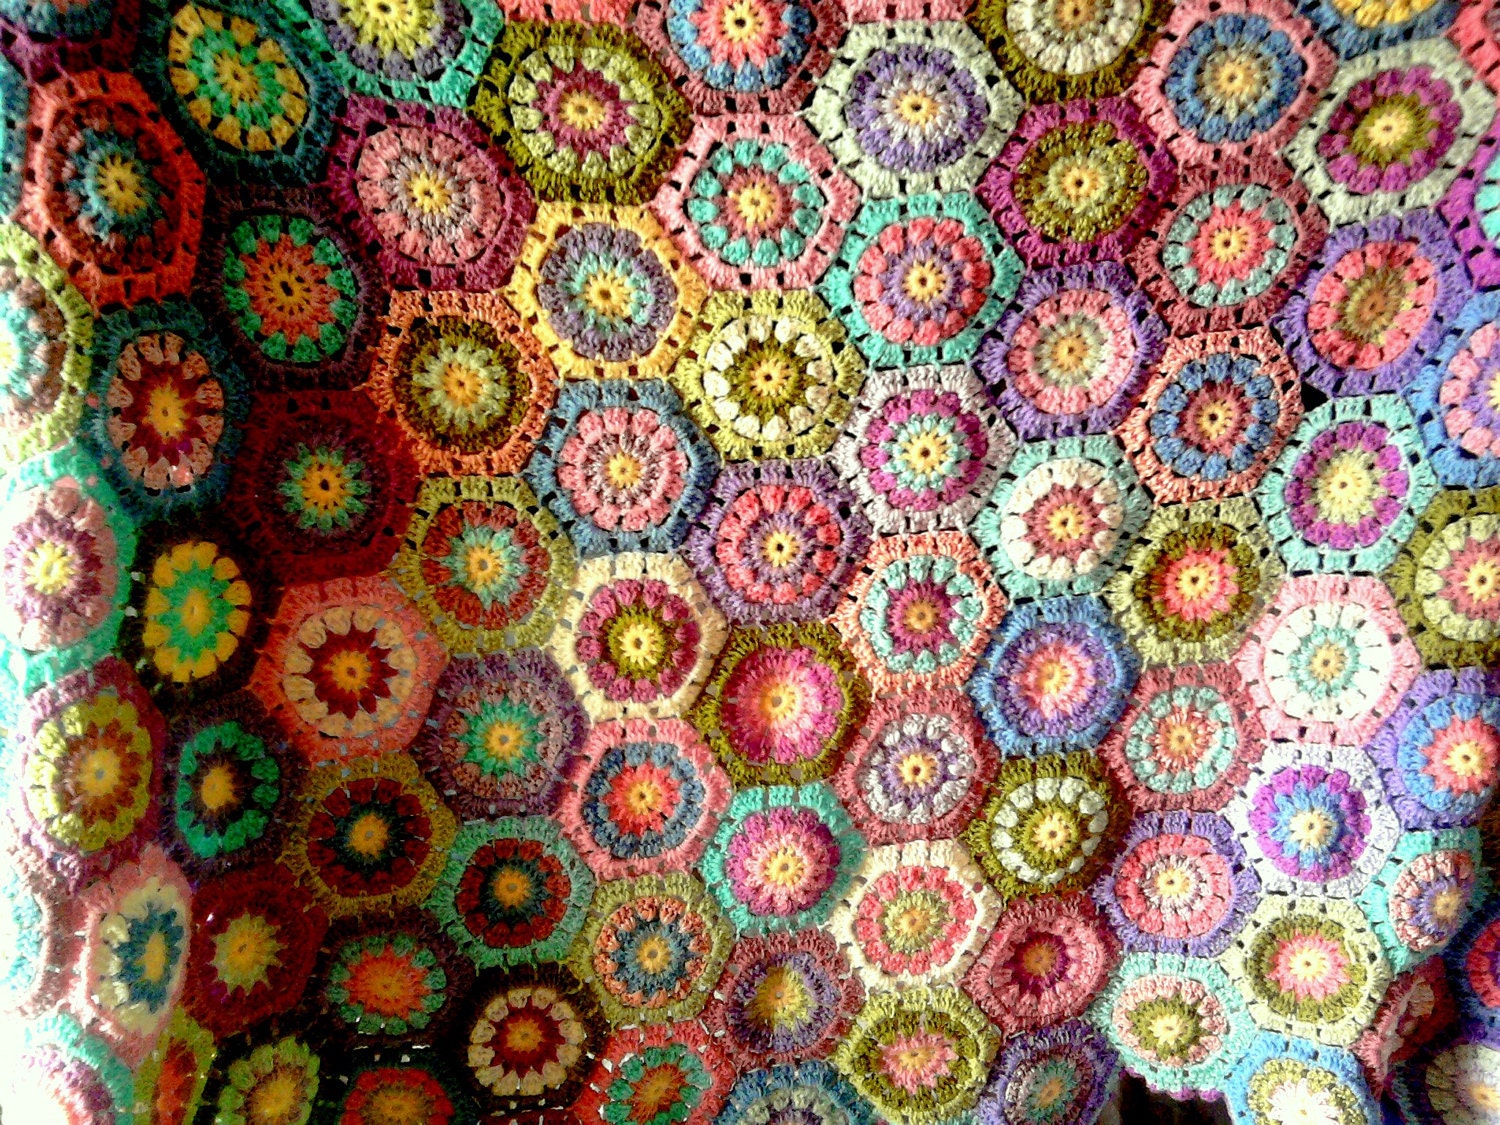 Crochet Hexagonal Granny Squares Afghan Blanket Free Shipment Worldwide